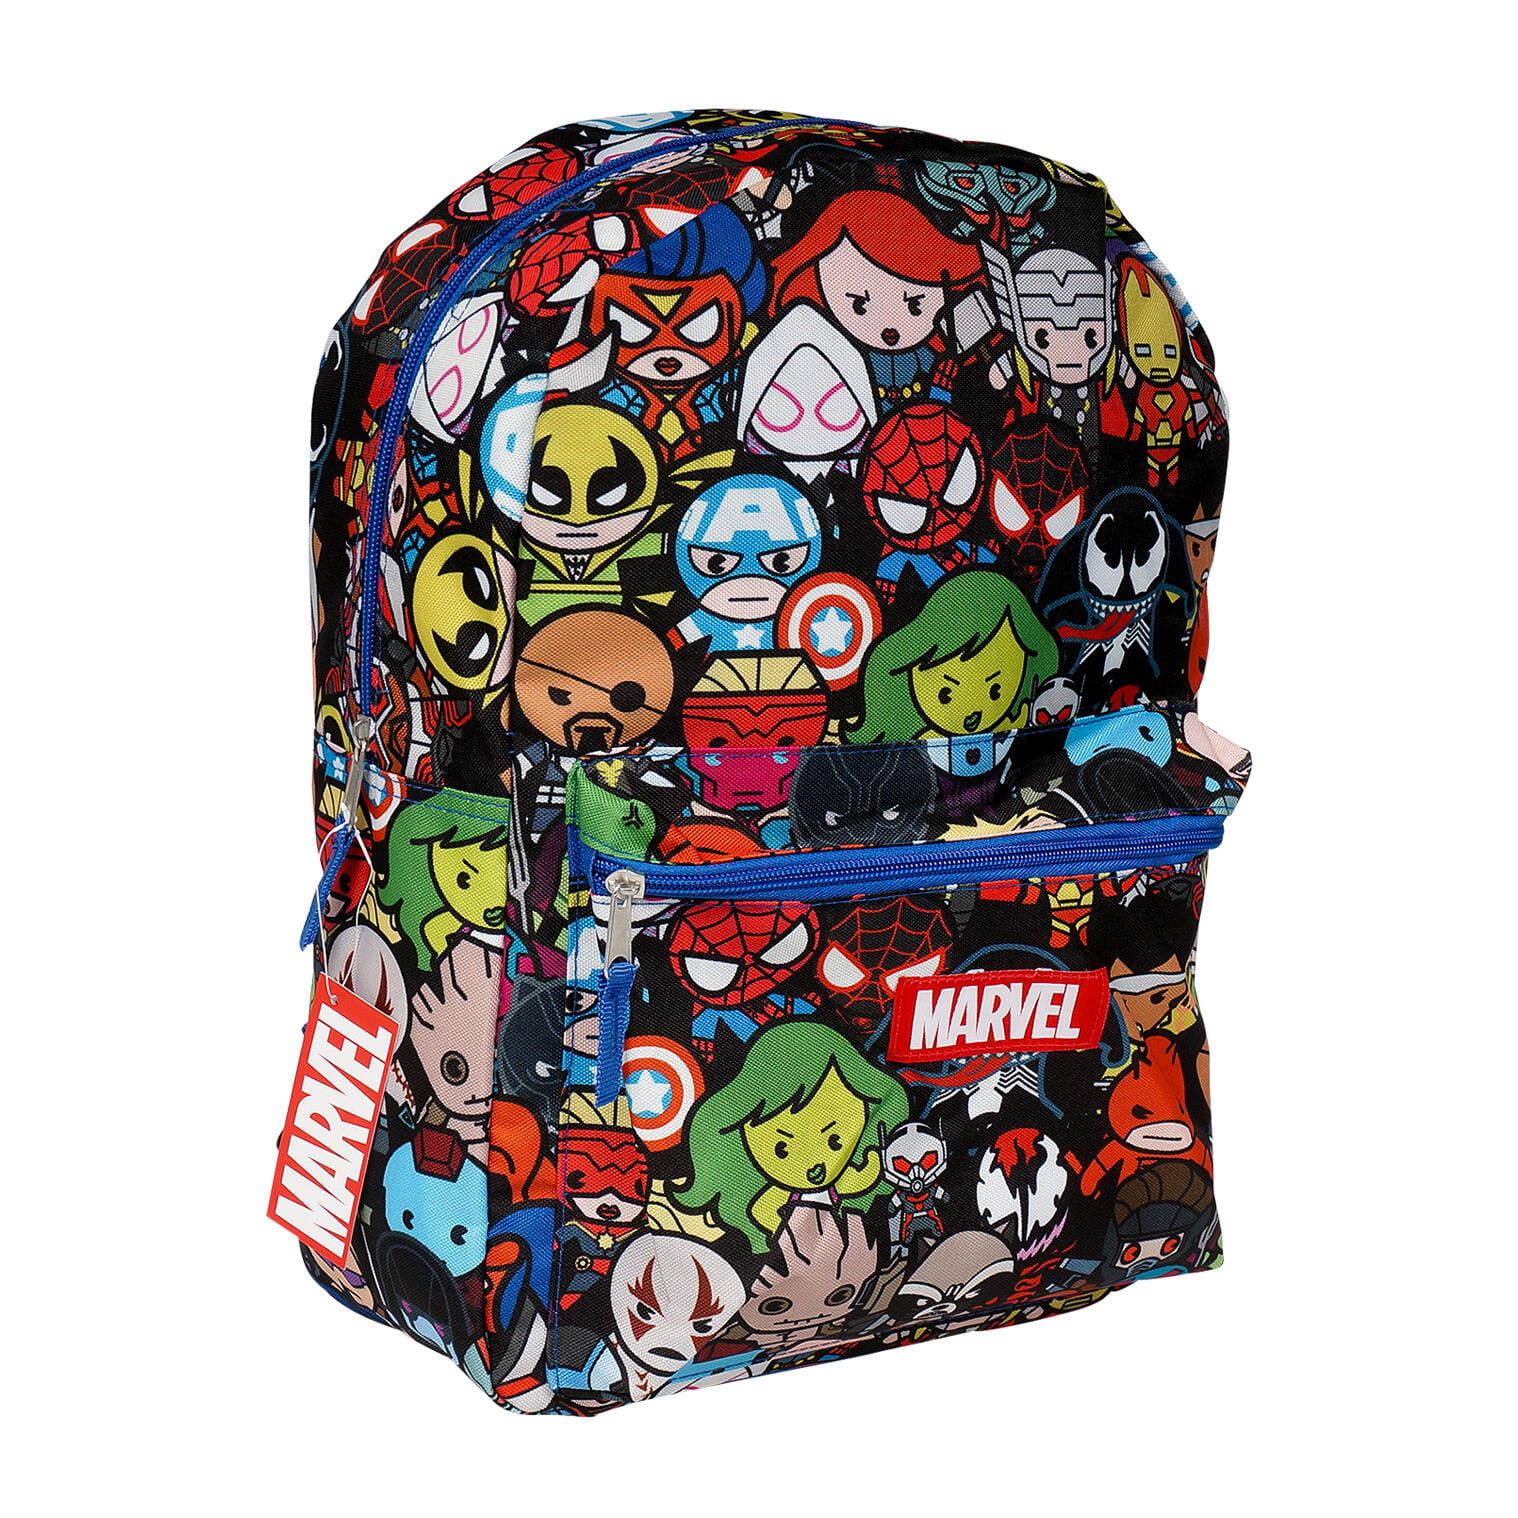 Marvel Avengers Allover Print 16 Large Backpack